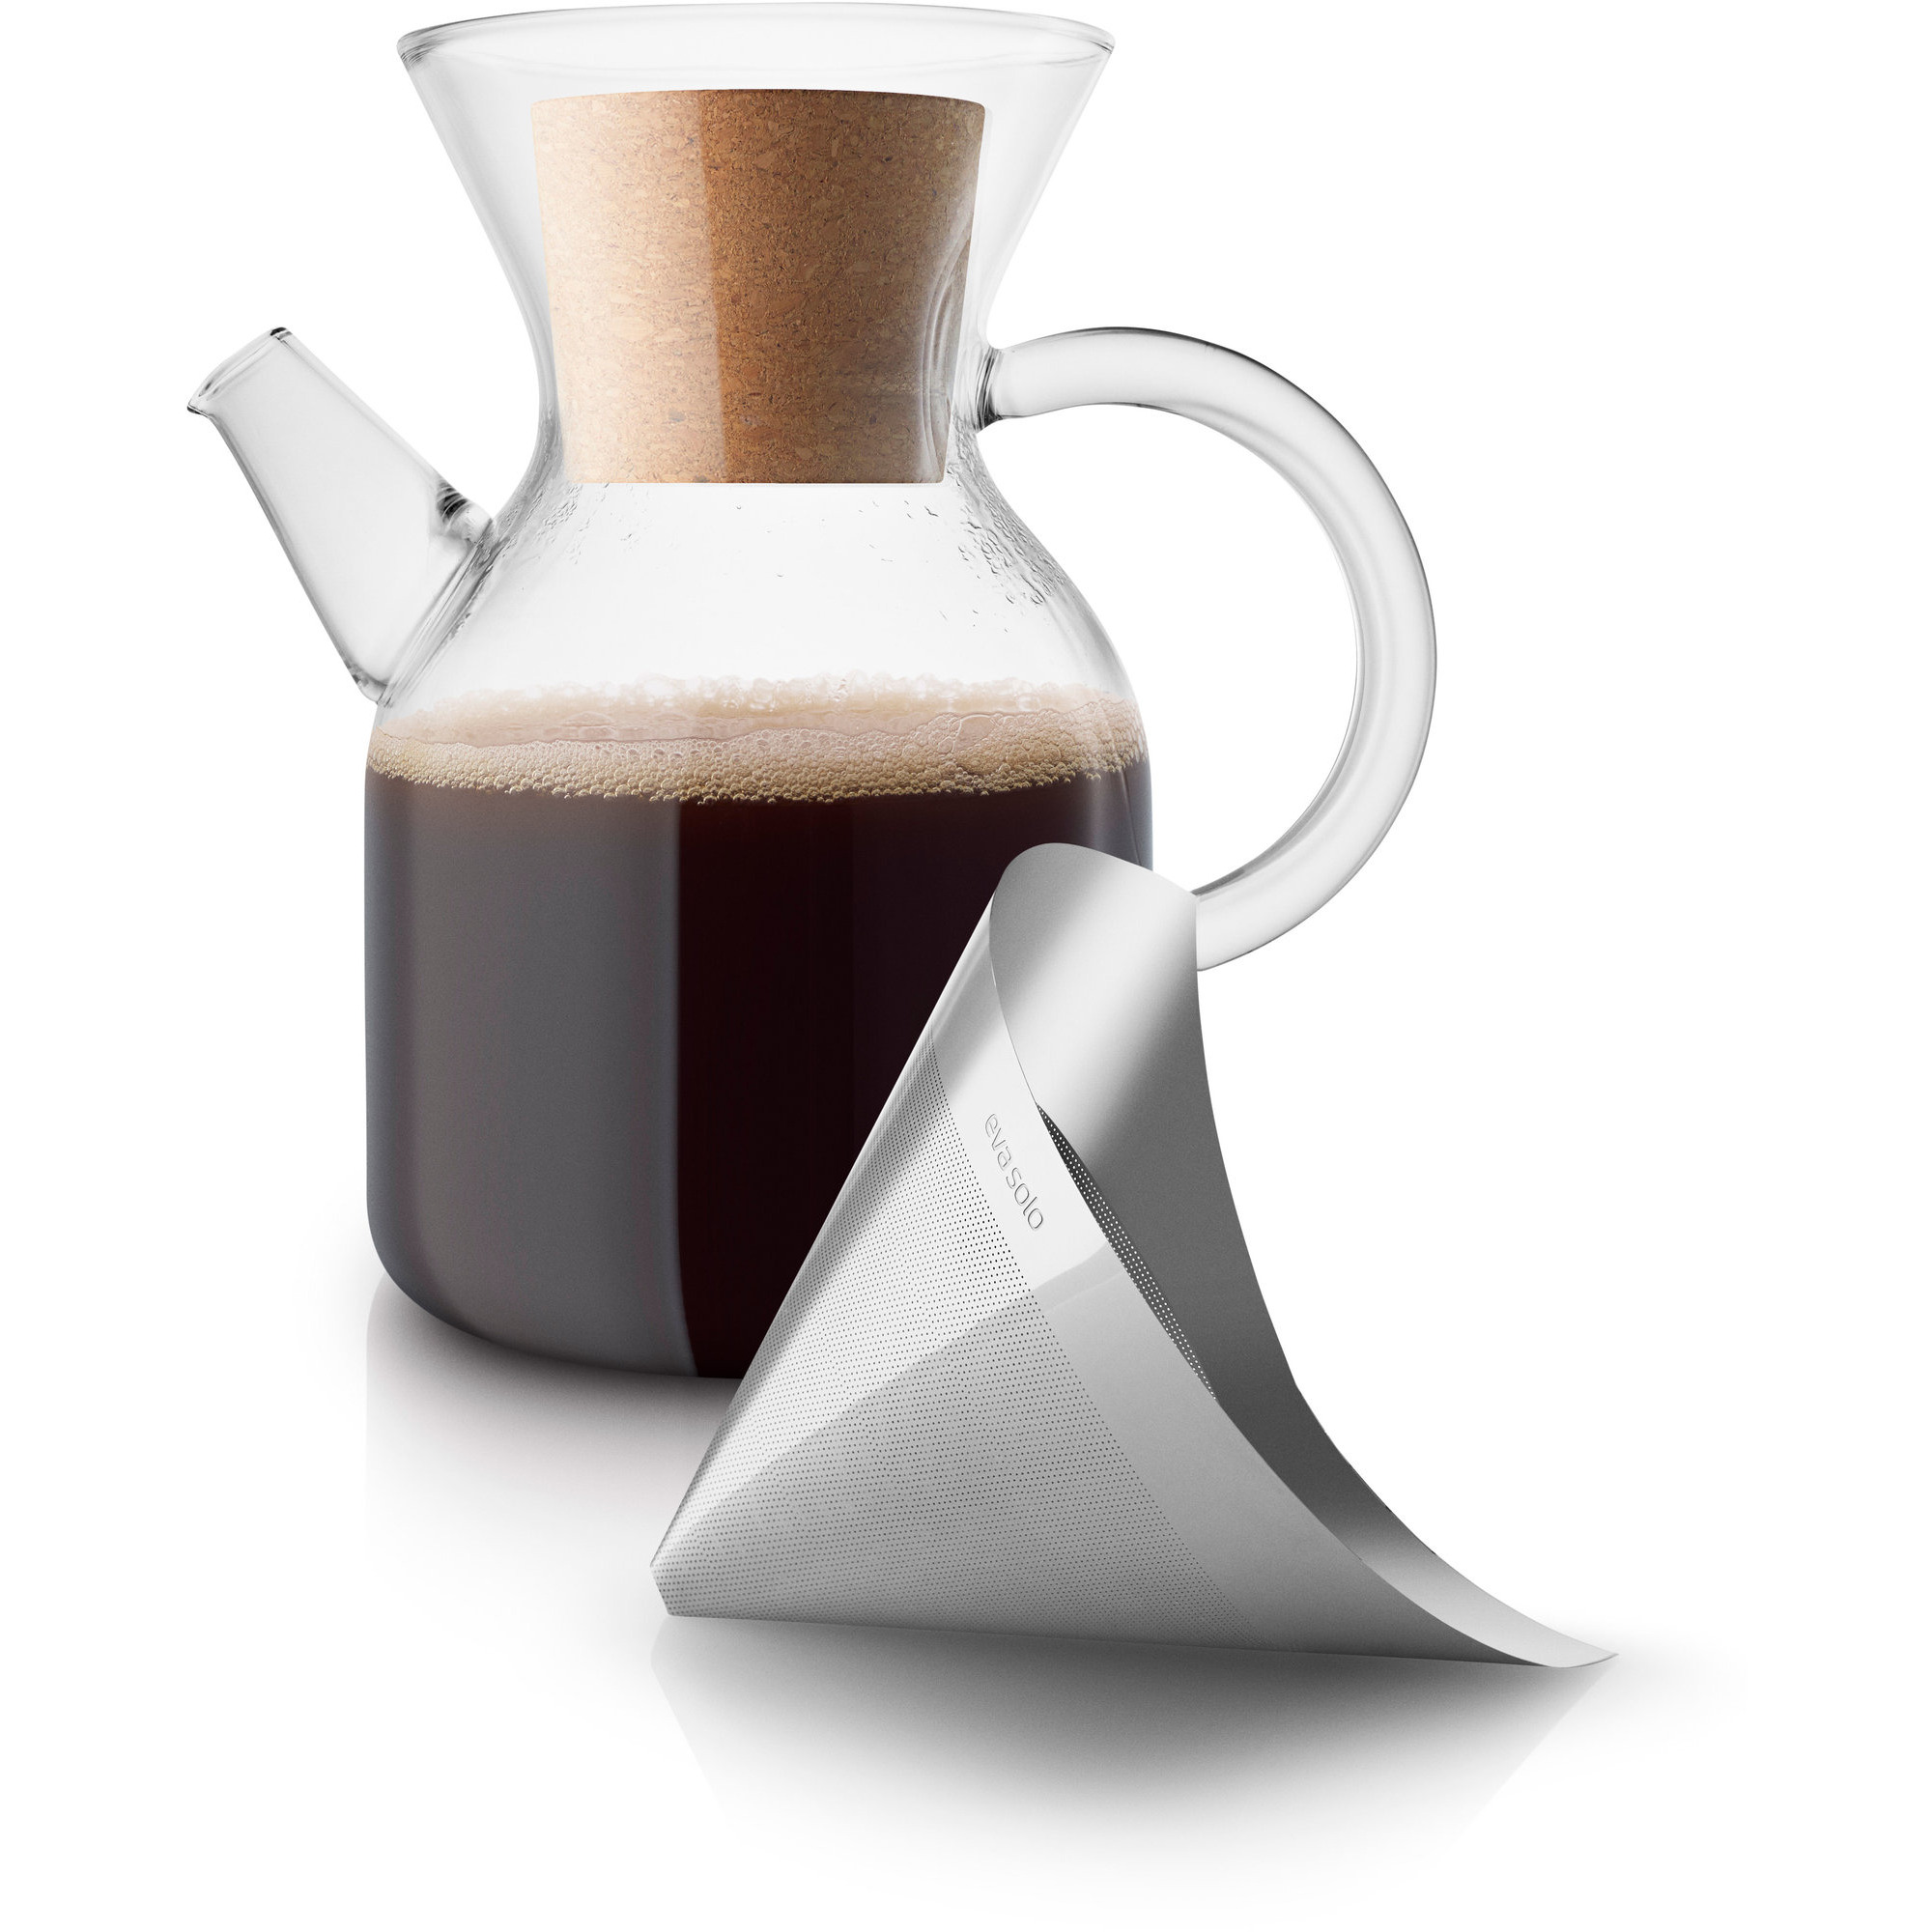 #1 på vores liste over kaffebryggere er Kaffebrygger